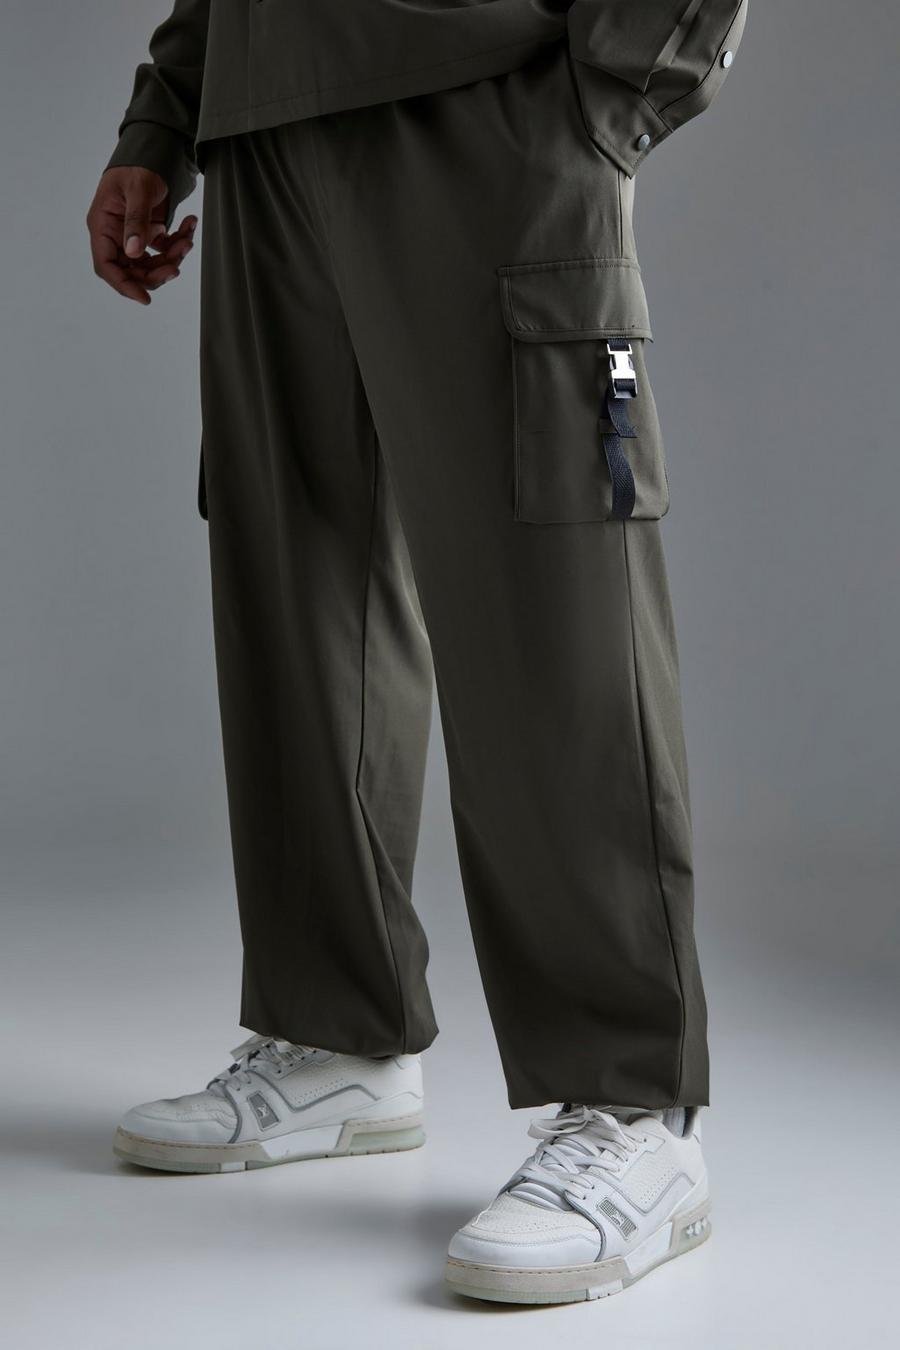 Pantalón Plus cargo utilitario elástico técnico con cintura elástica, Khaki